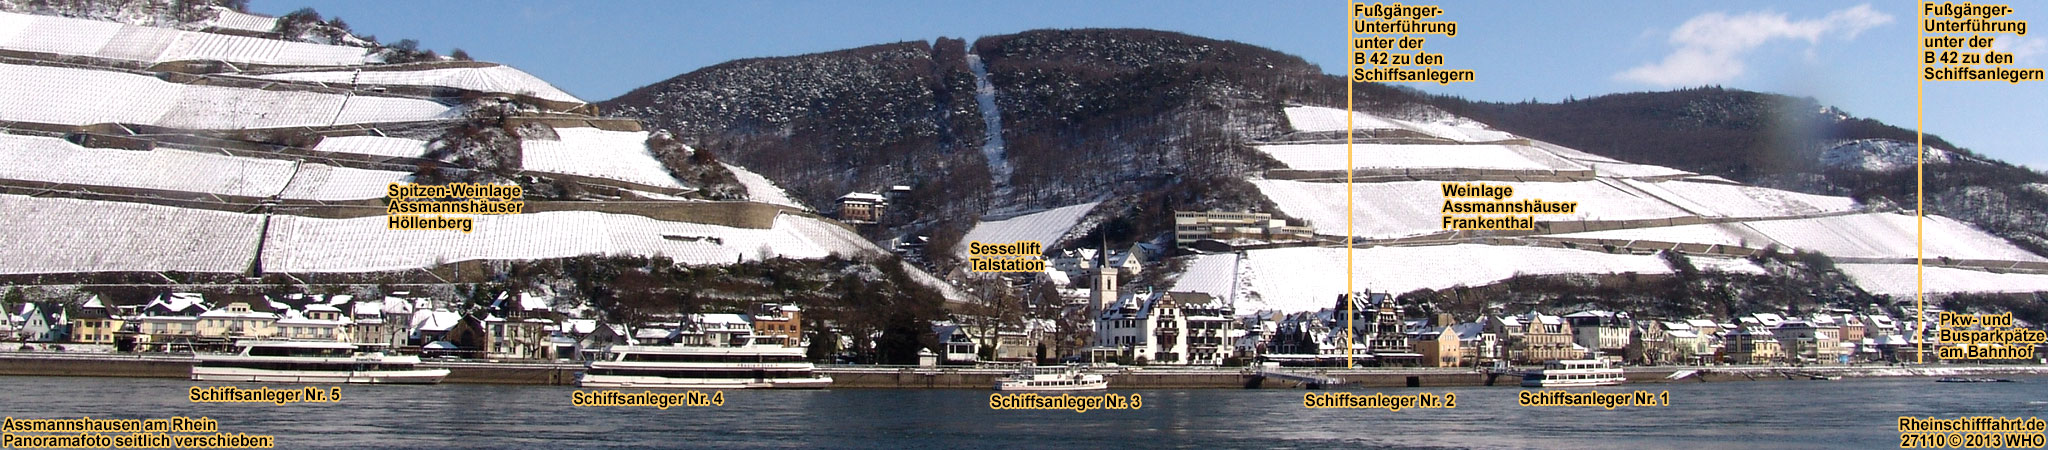 Schiffsanleger in Assmannshausen, auch in den Wintermonaten Schifffahrt auf dem Rhein bei Assmannshausen Richtung Loreley